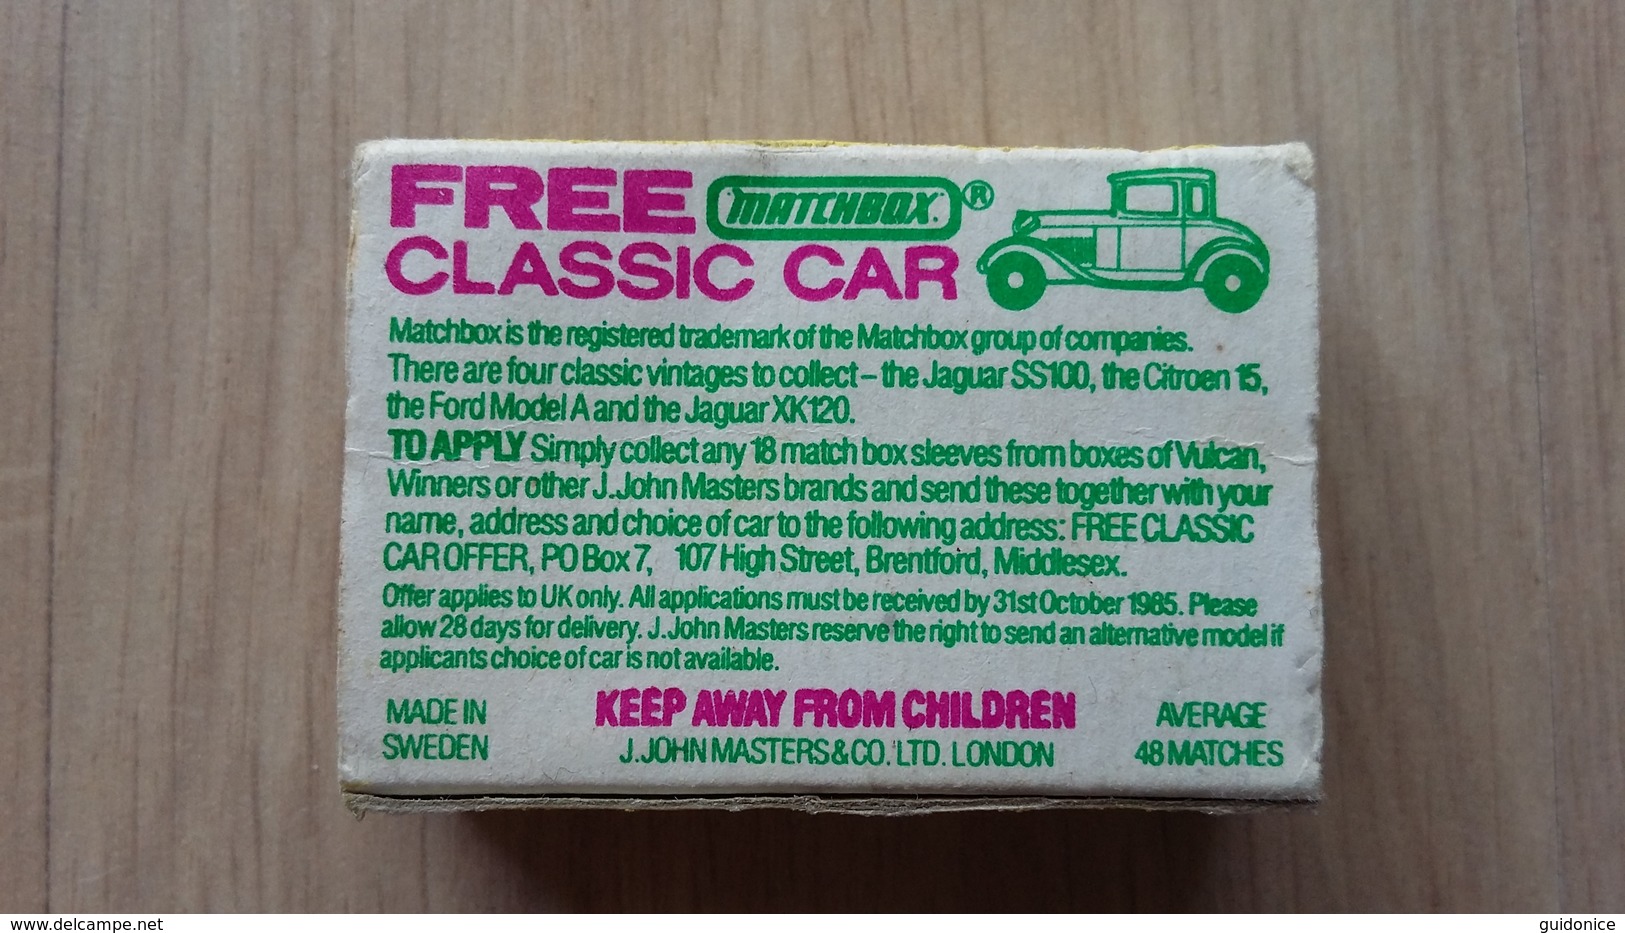 Zündholzschachtel Aus Großbritannien Von 1985 ("Vulcan Matches") Mit Werbung Für MATCHBOX-Autos - Zündholzschachteln